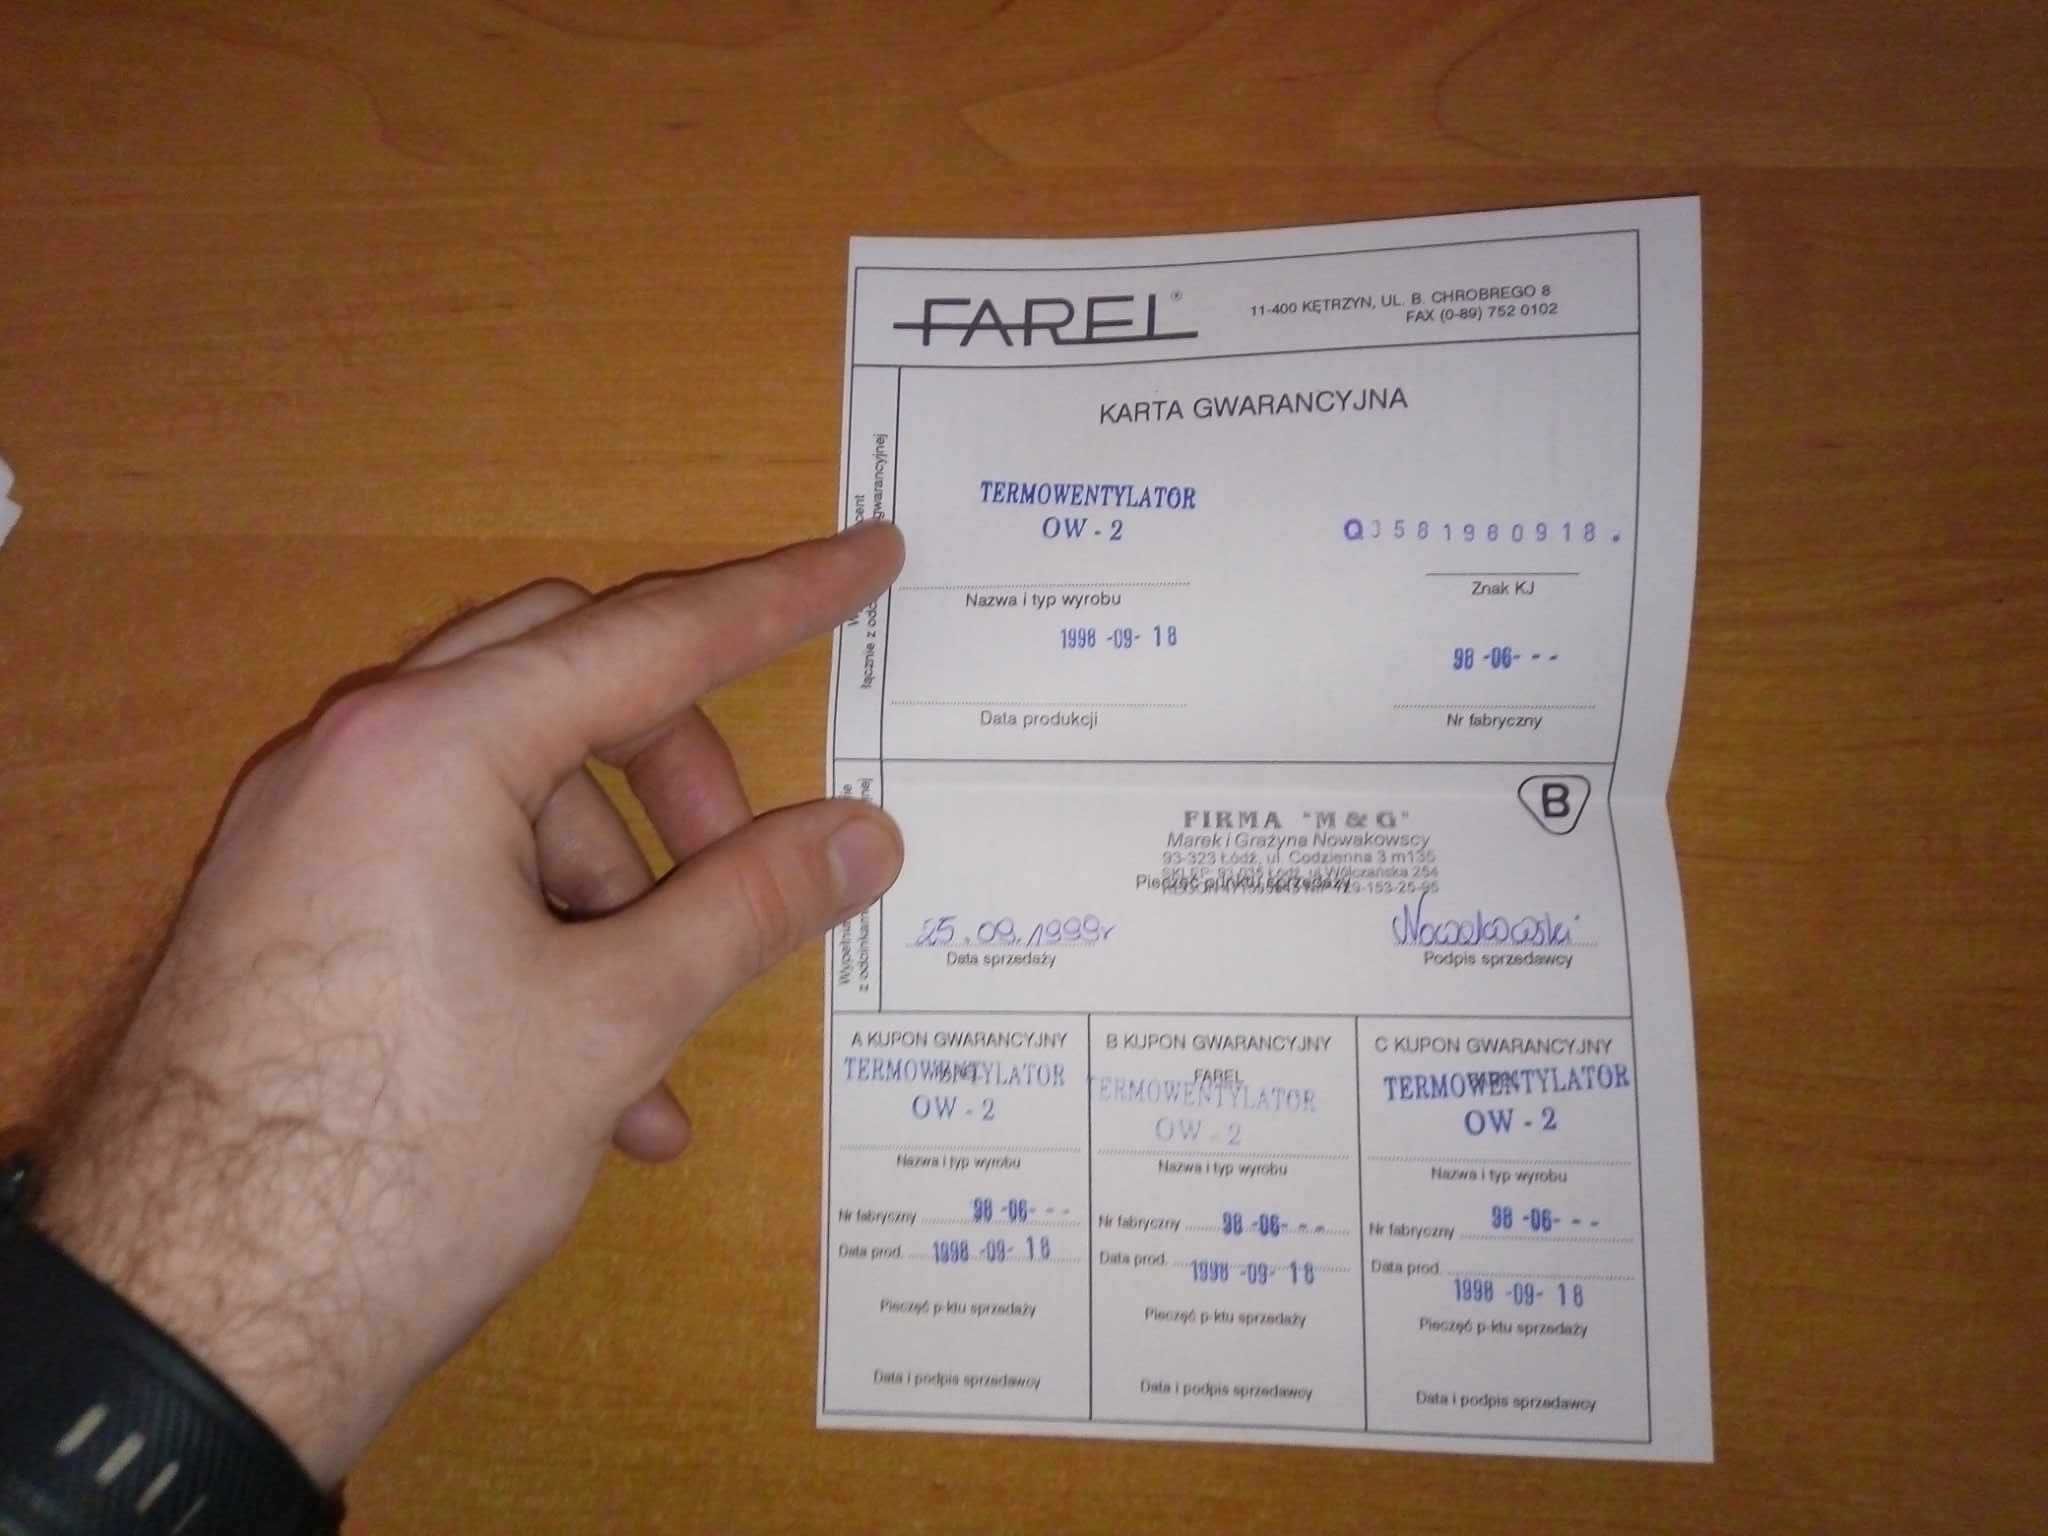 Termowentylator OW-2 Farel farelka karta gwarancyjna 1998 Kętrzyn PRL